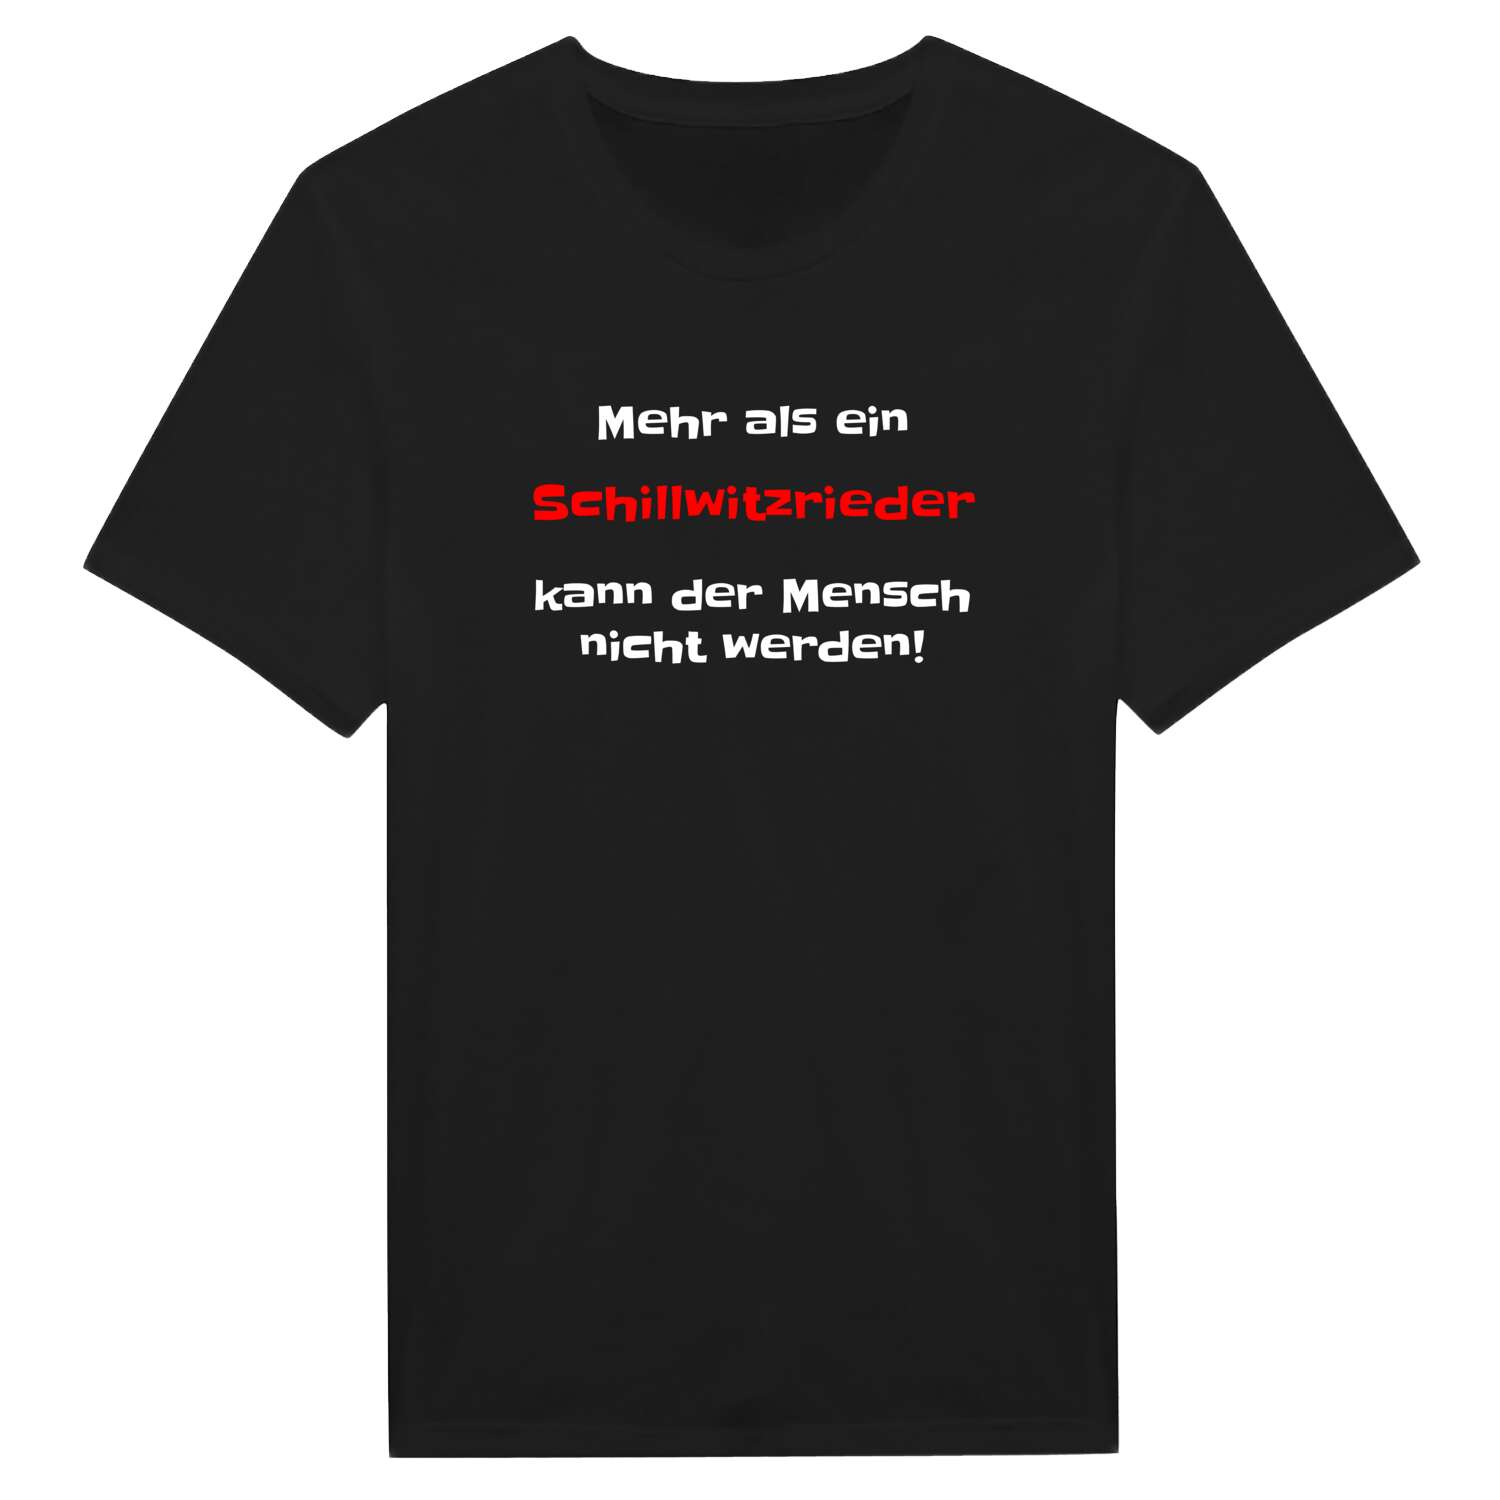 Schillwitzried T-Shirt »Mehr als ein«